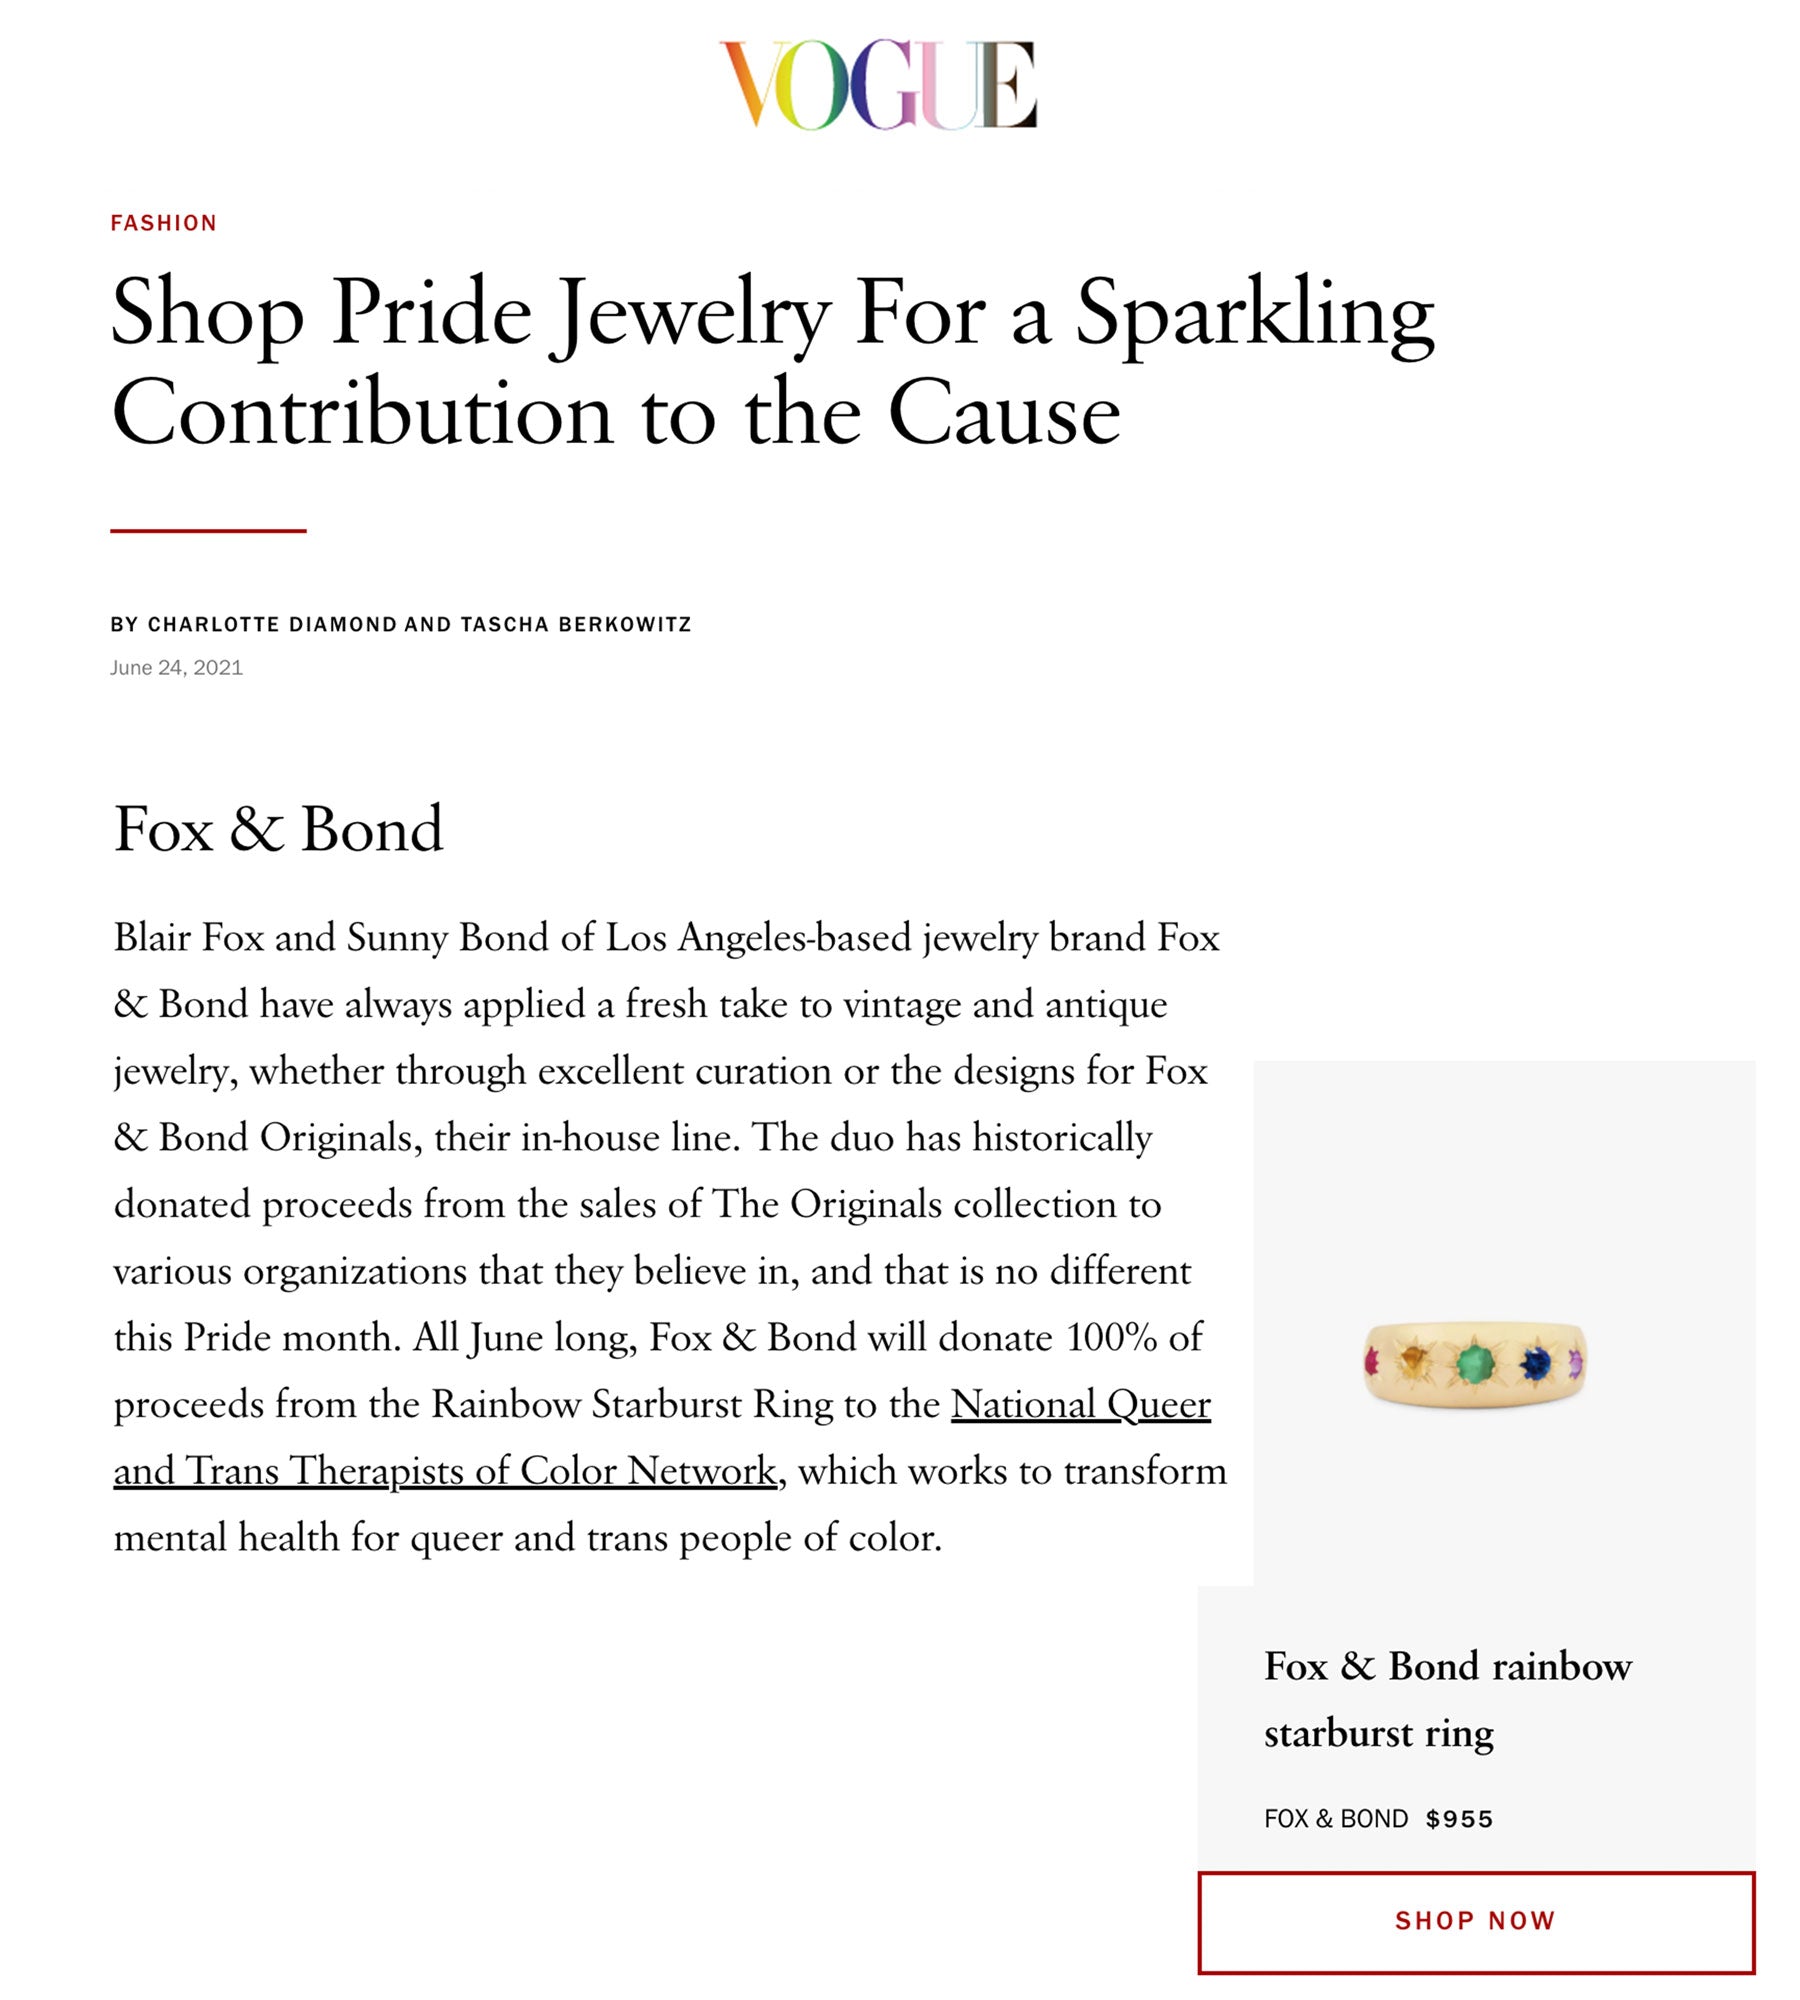 Vogue.com: Shop Pride Jewelry For a Sparkling Contribution to the Cause